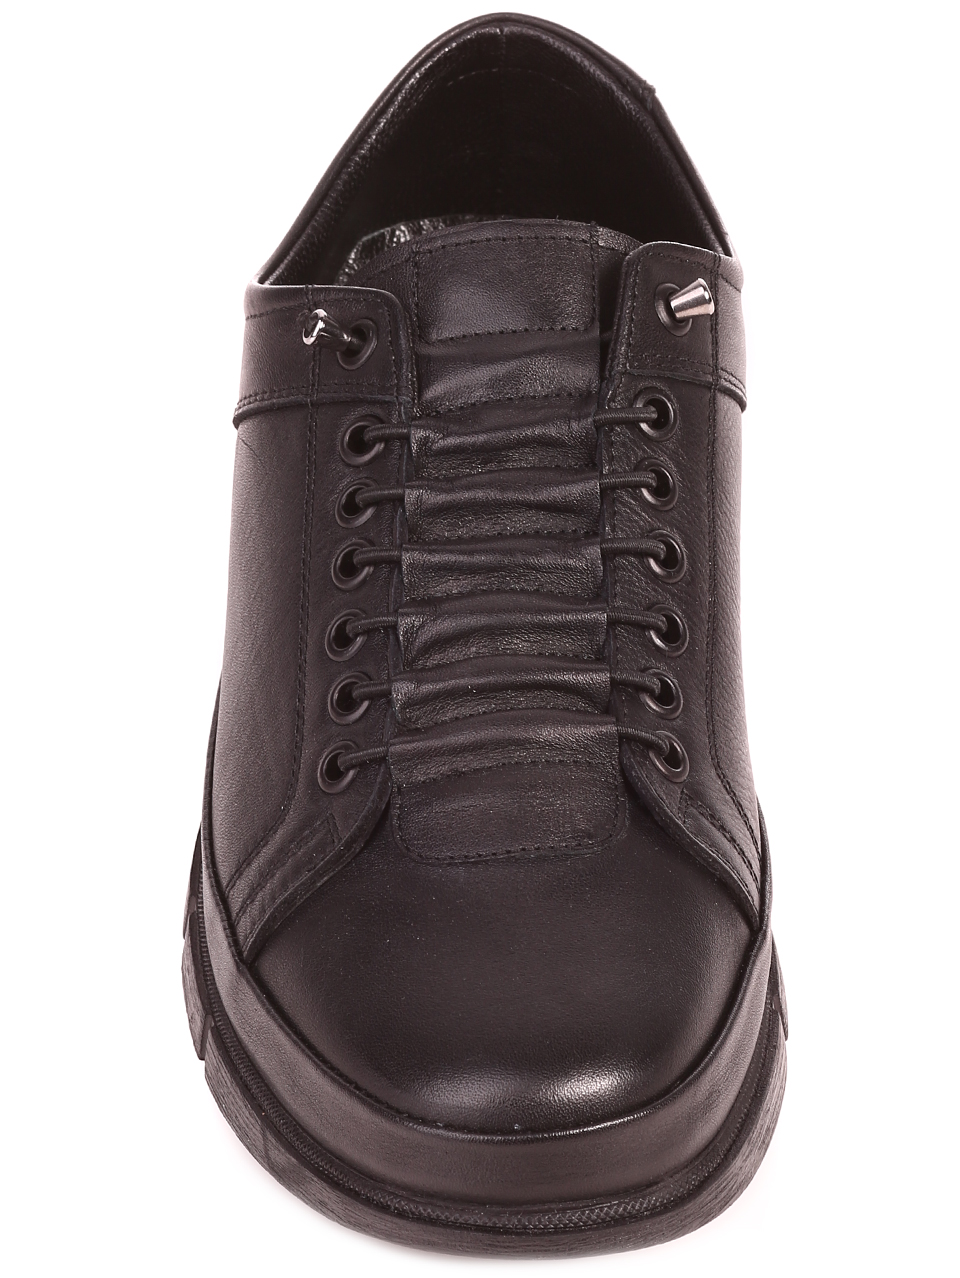 Eжедневни мъжки обувки от естествена кожа в черно 7AT-23780 black (21842)